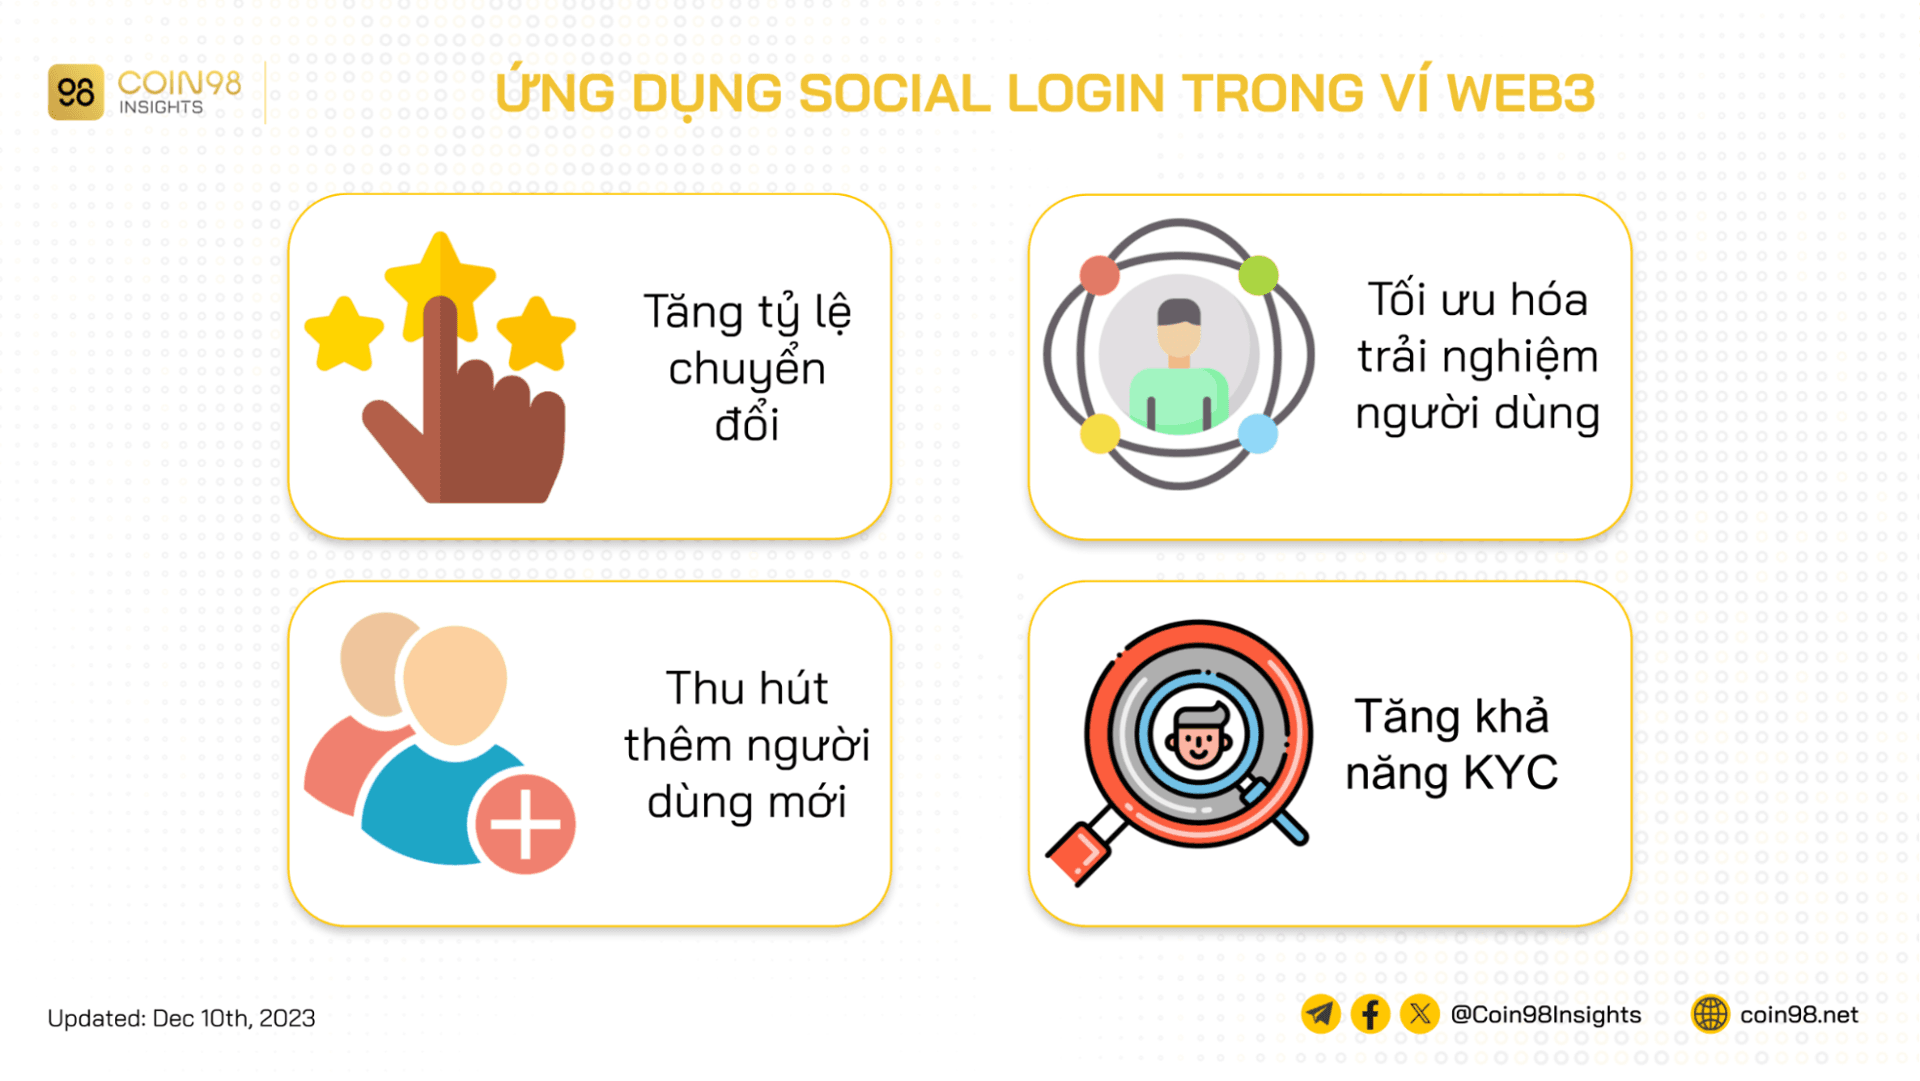 ứng dụng social login trong ví web3